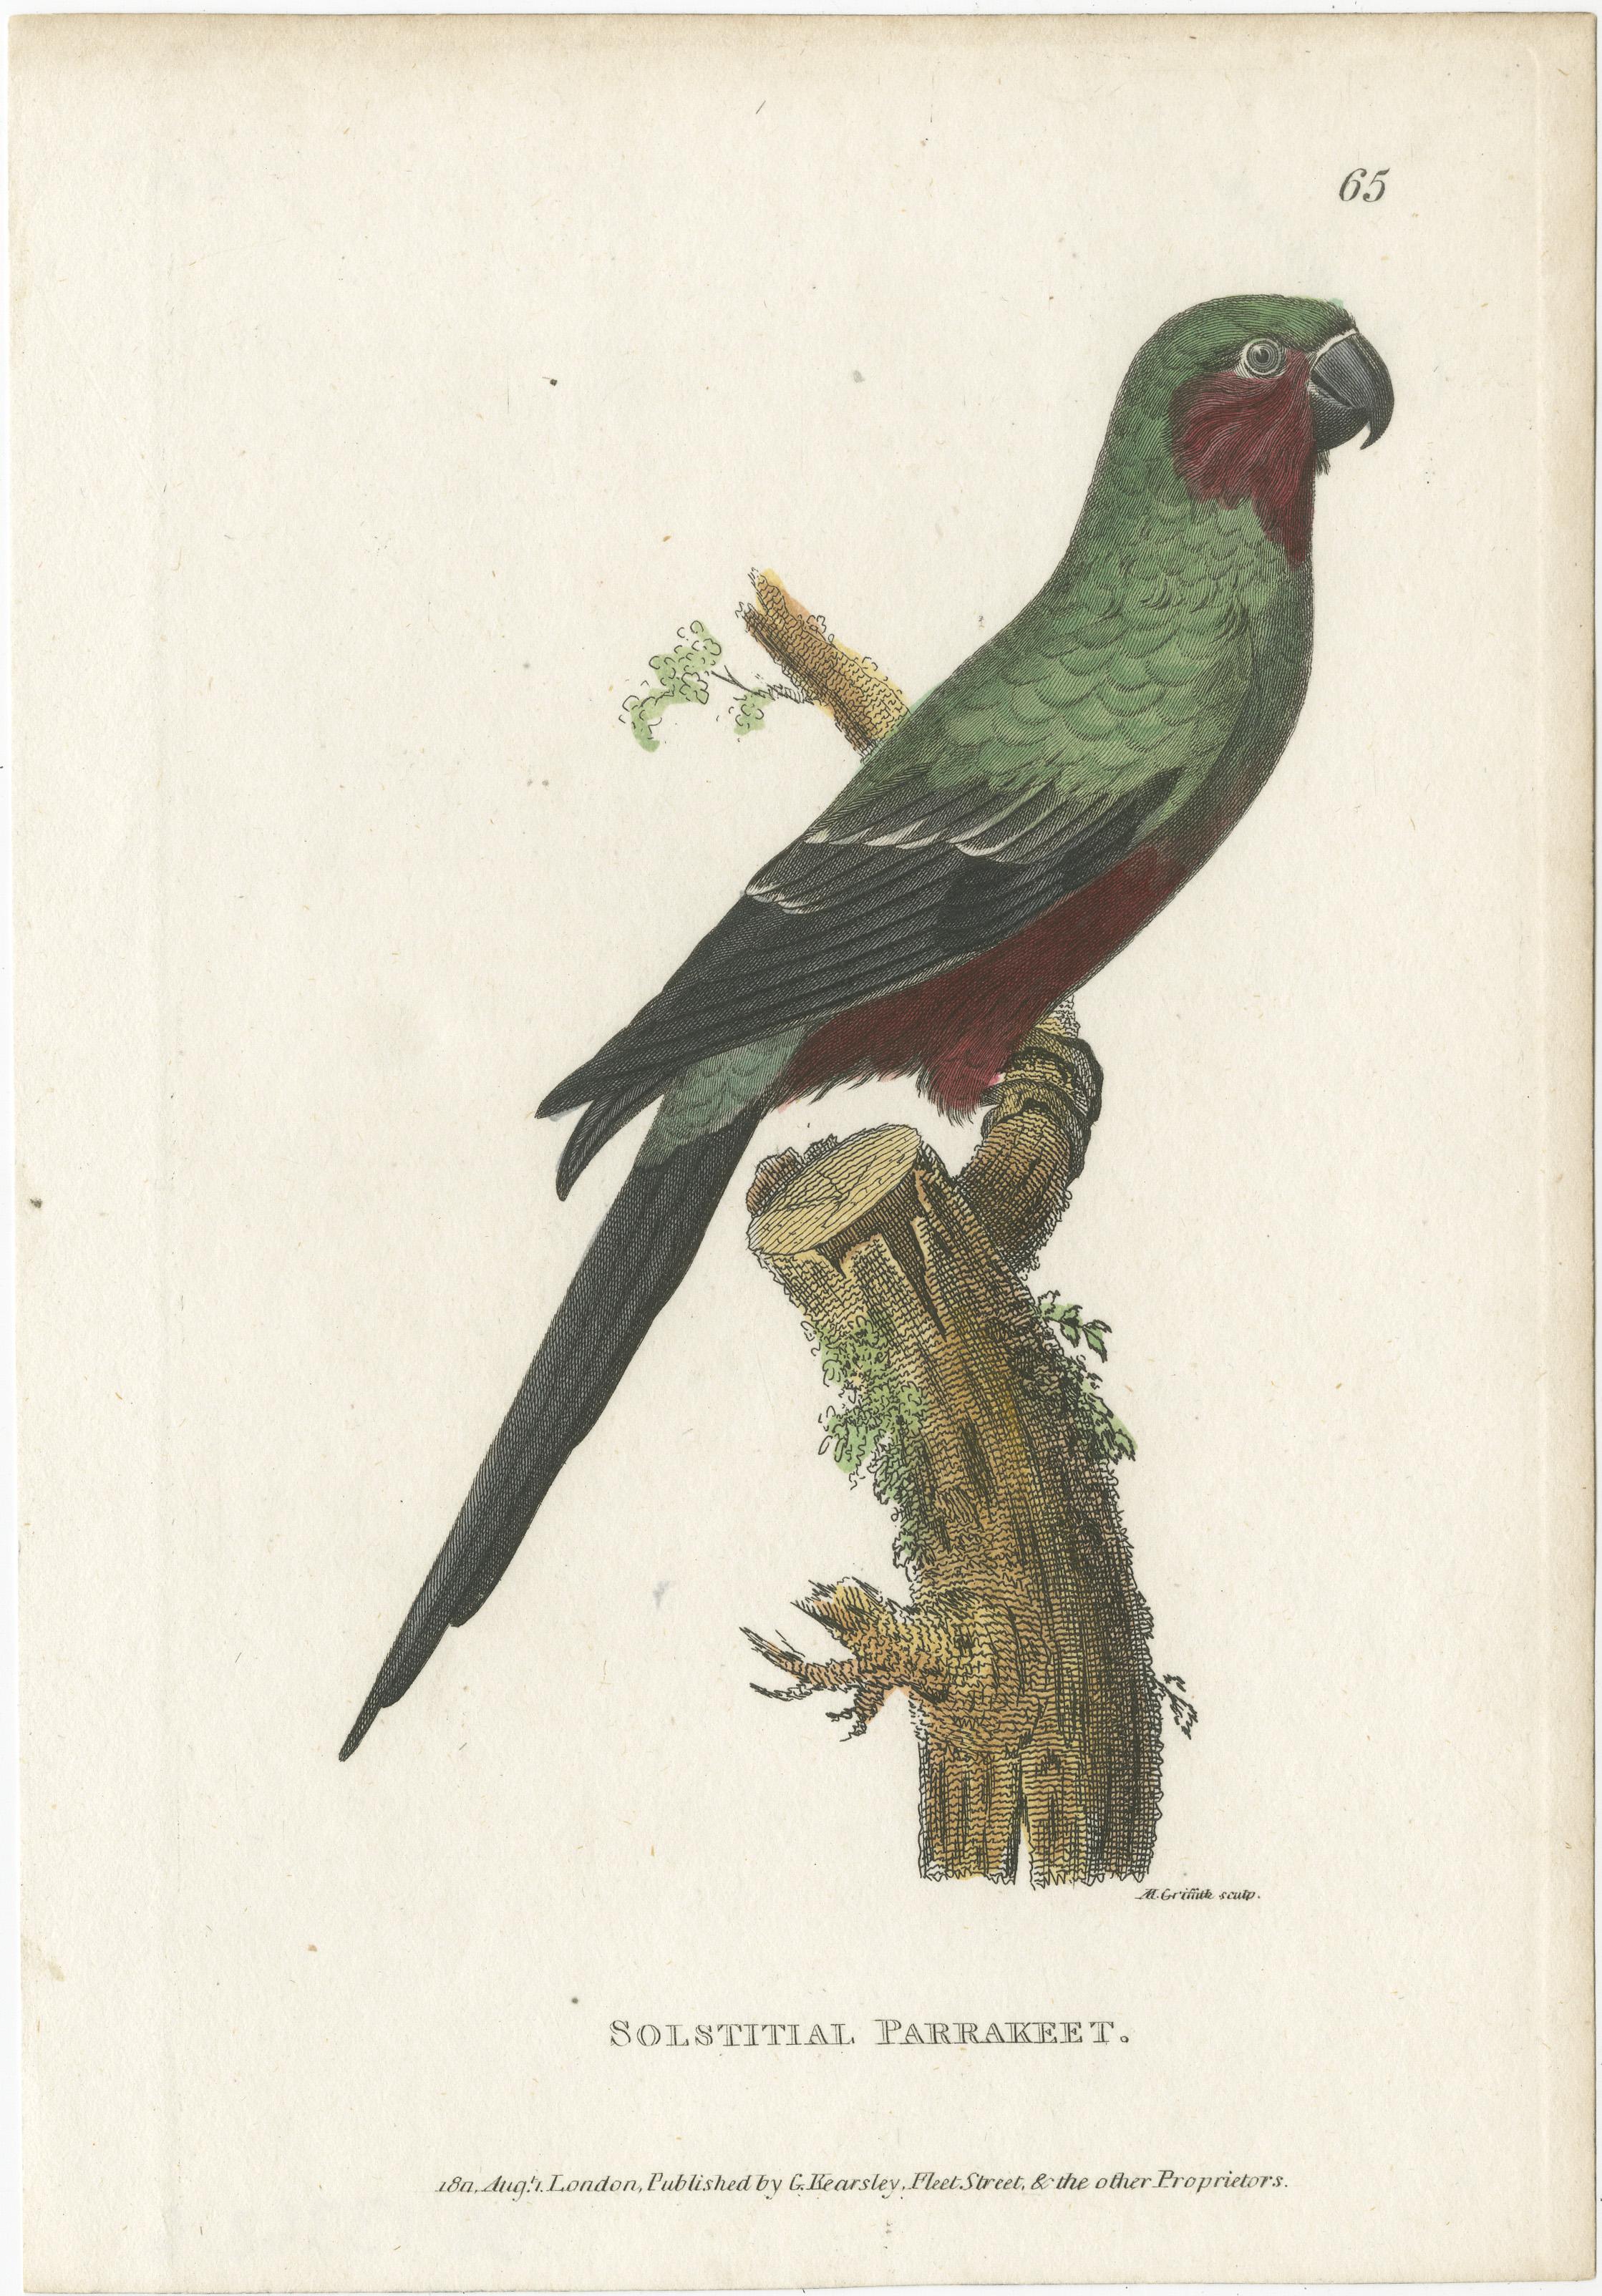 Gravure ancienne d'oiseau intitulée 'Solstitial Parrakeet'. Impression colorée à la main d'une perruche soleil. Cette estampe provient de l'